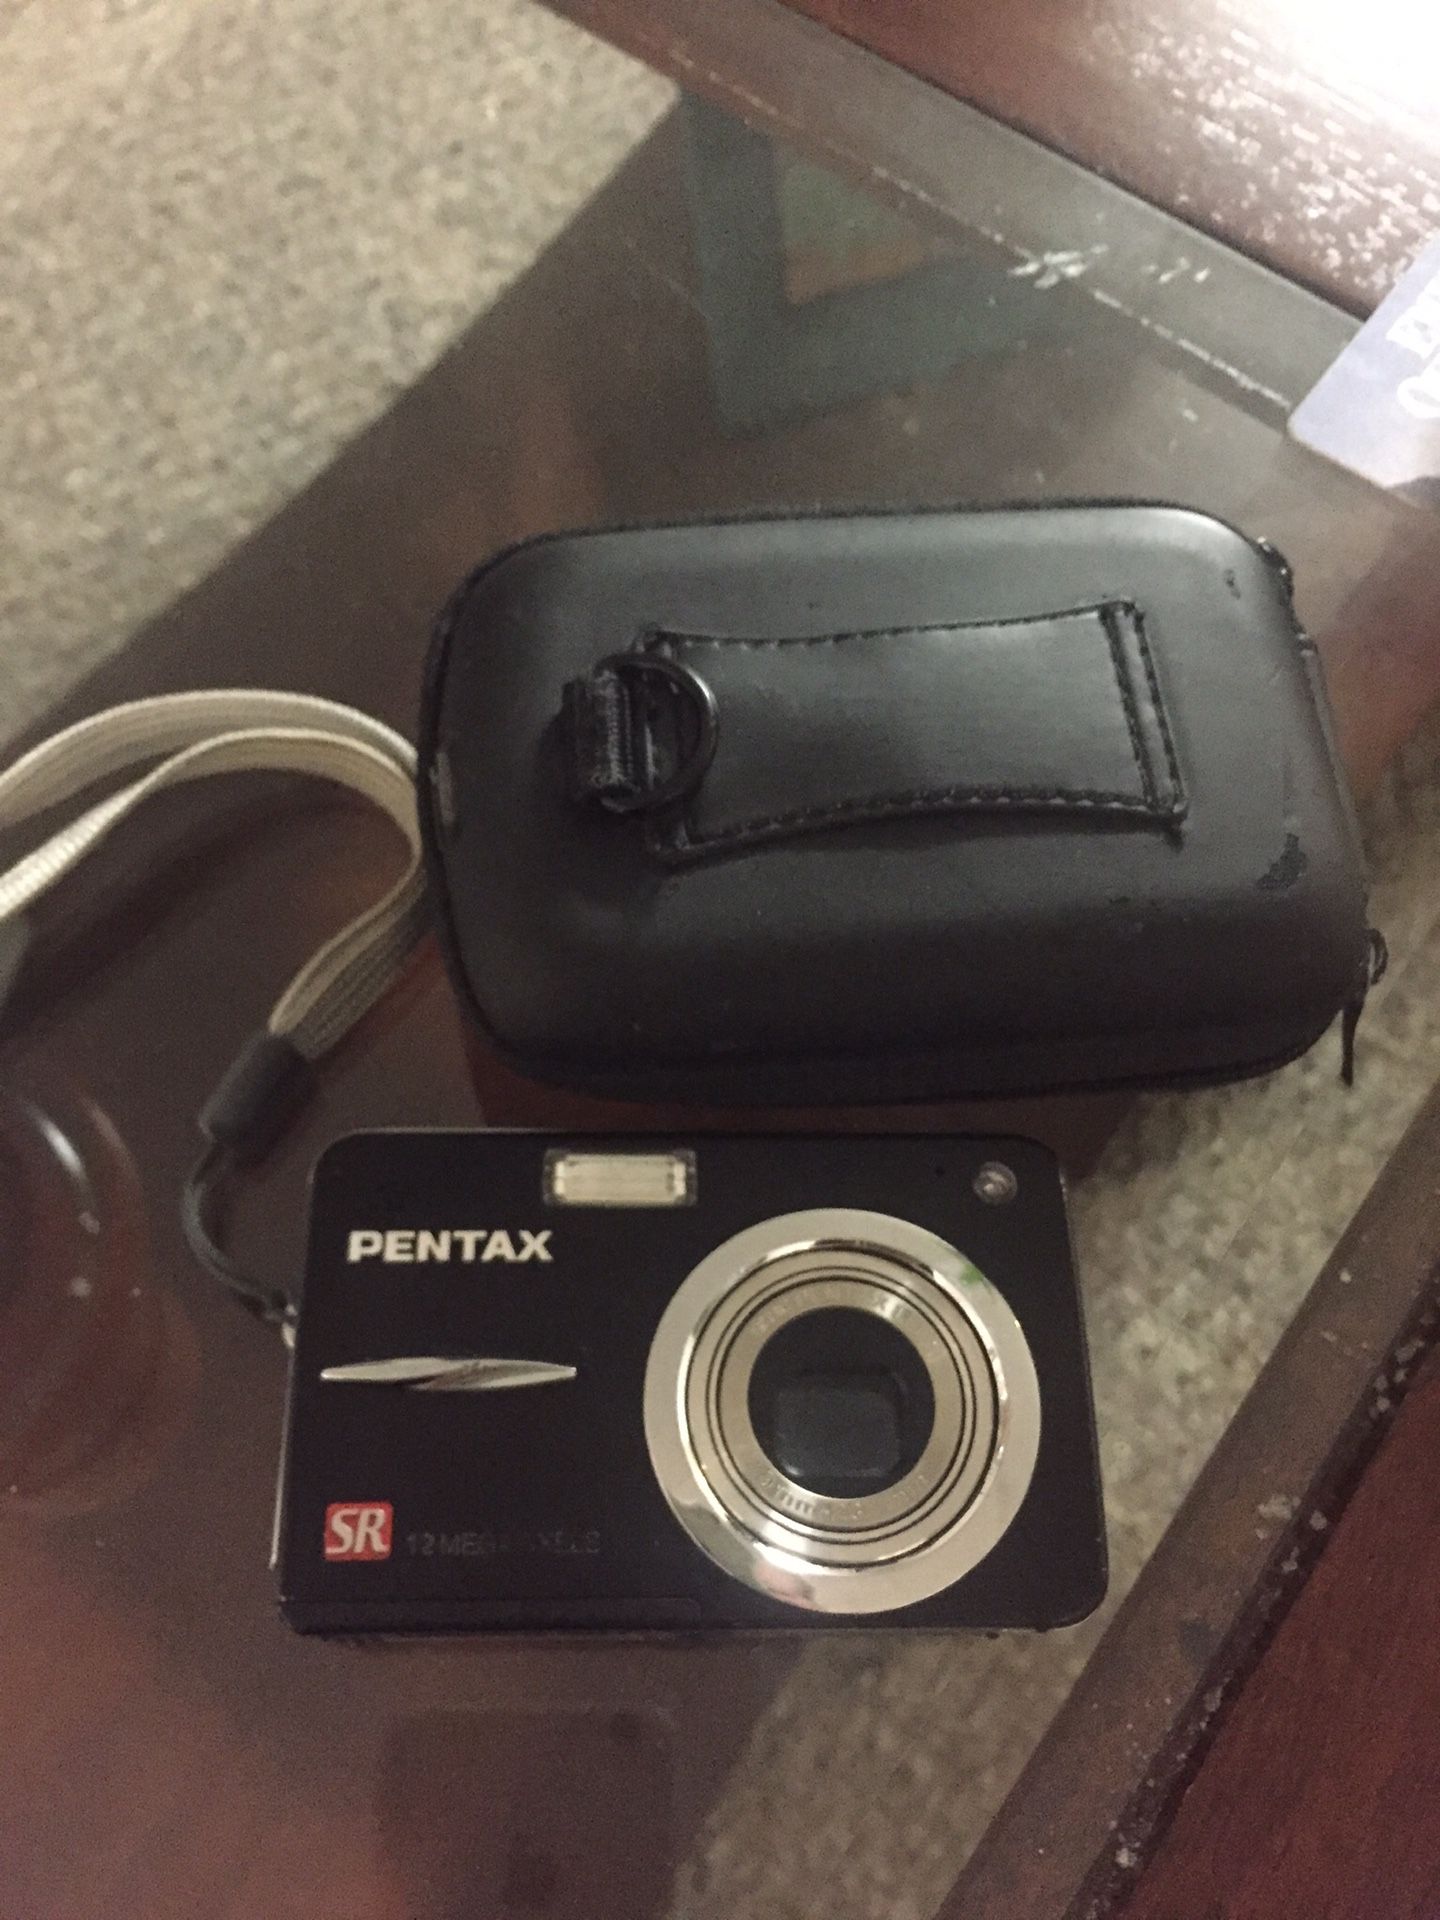 Pentax SR digital camera